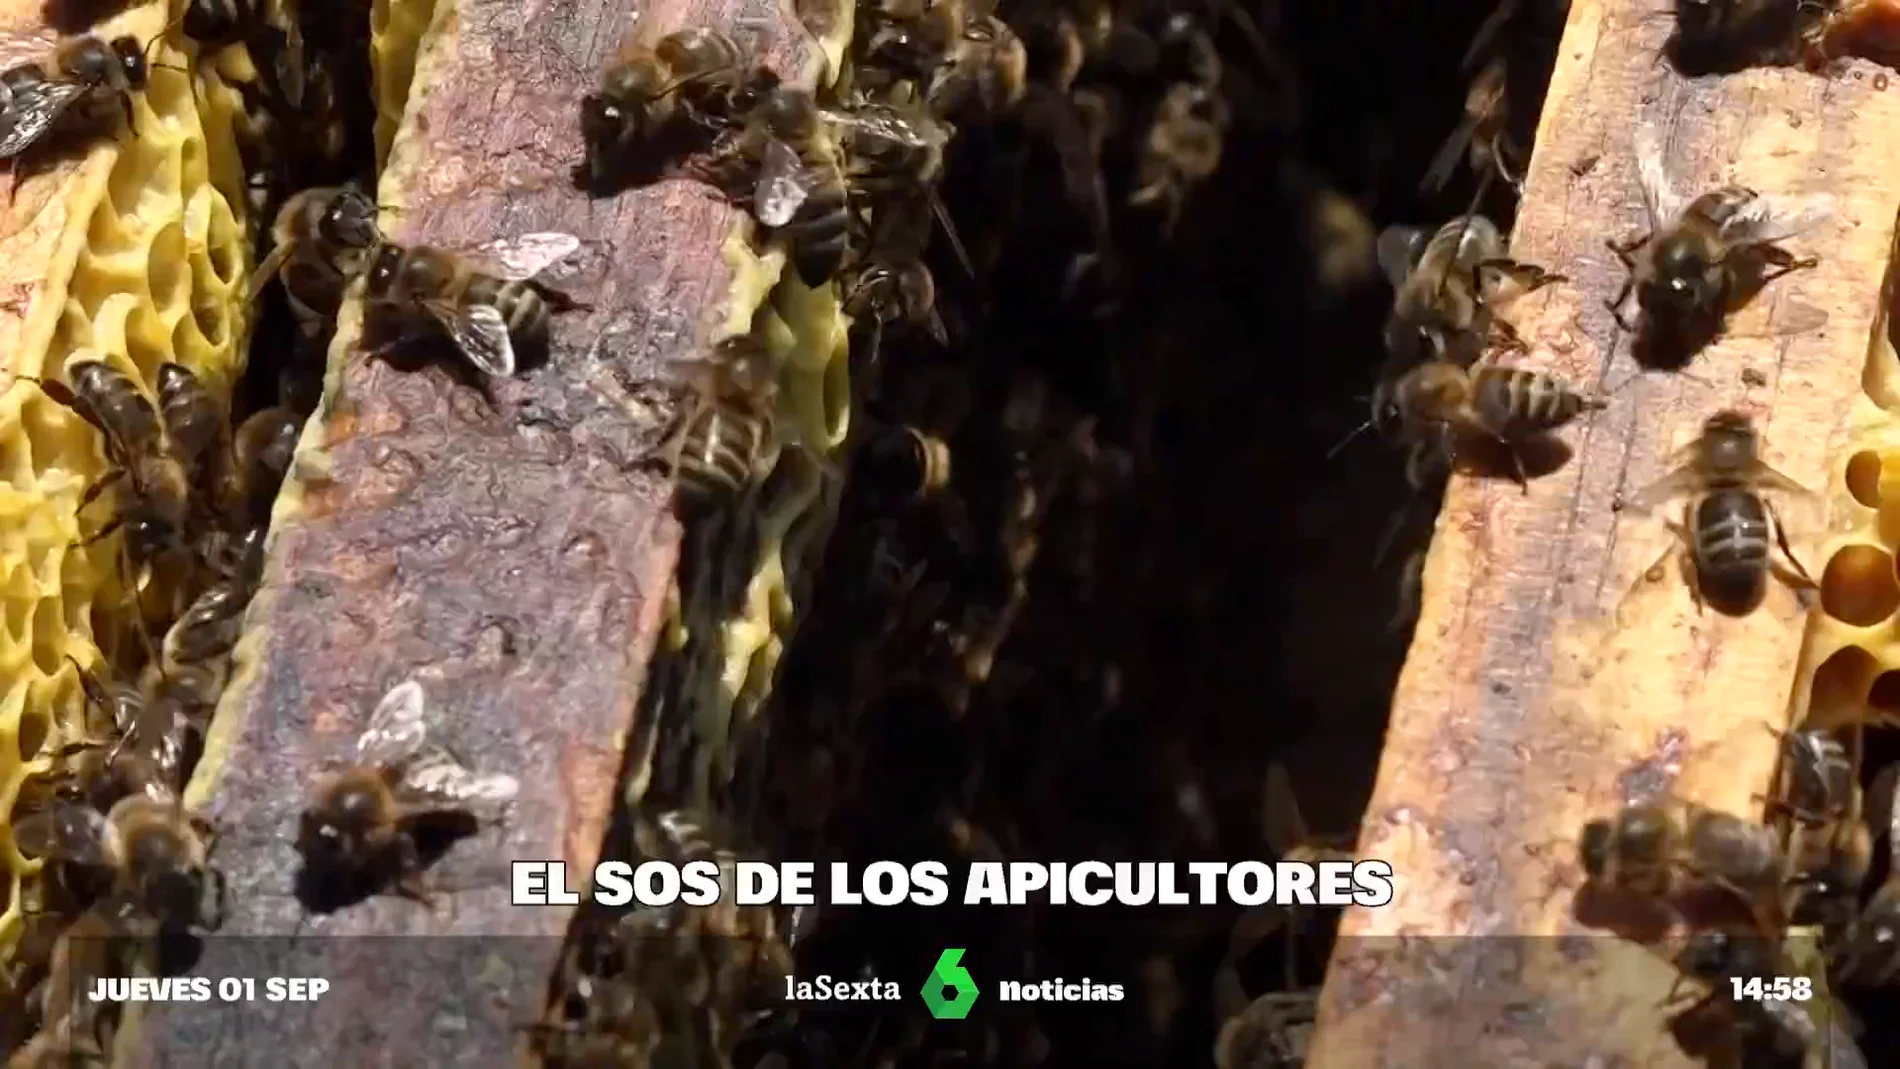 SOS apicultores